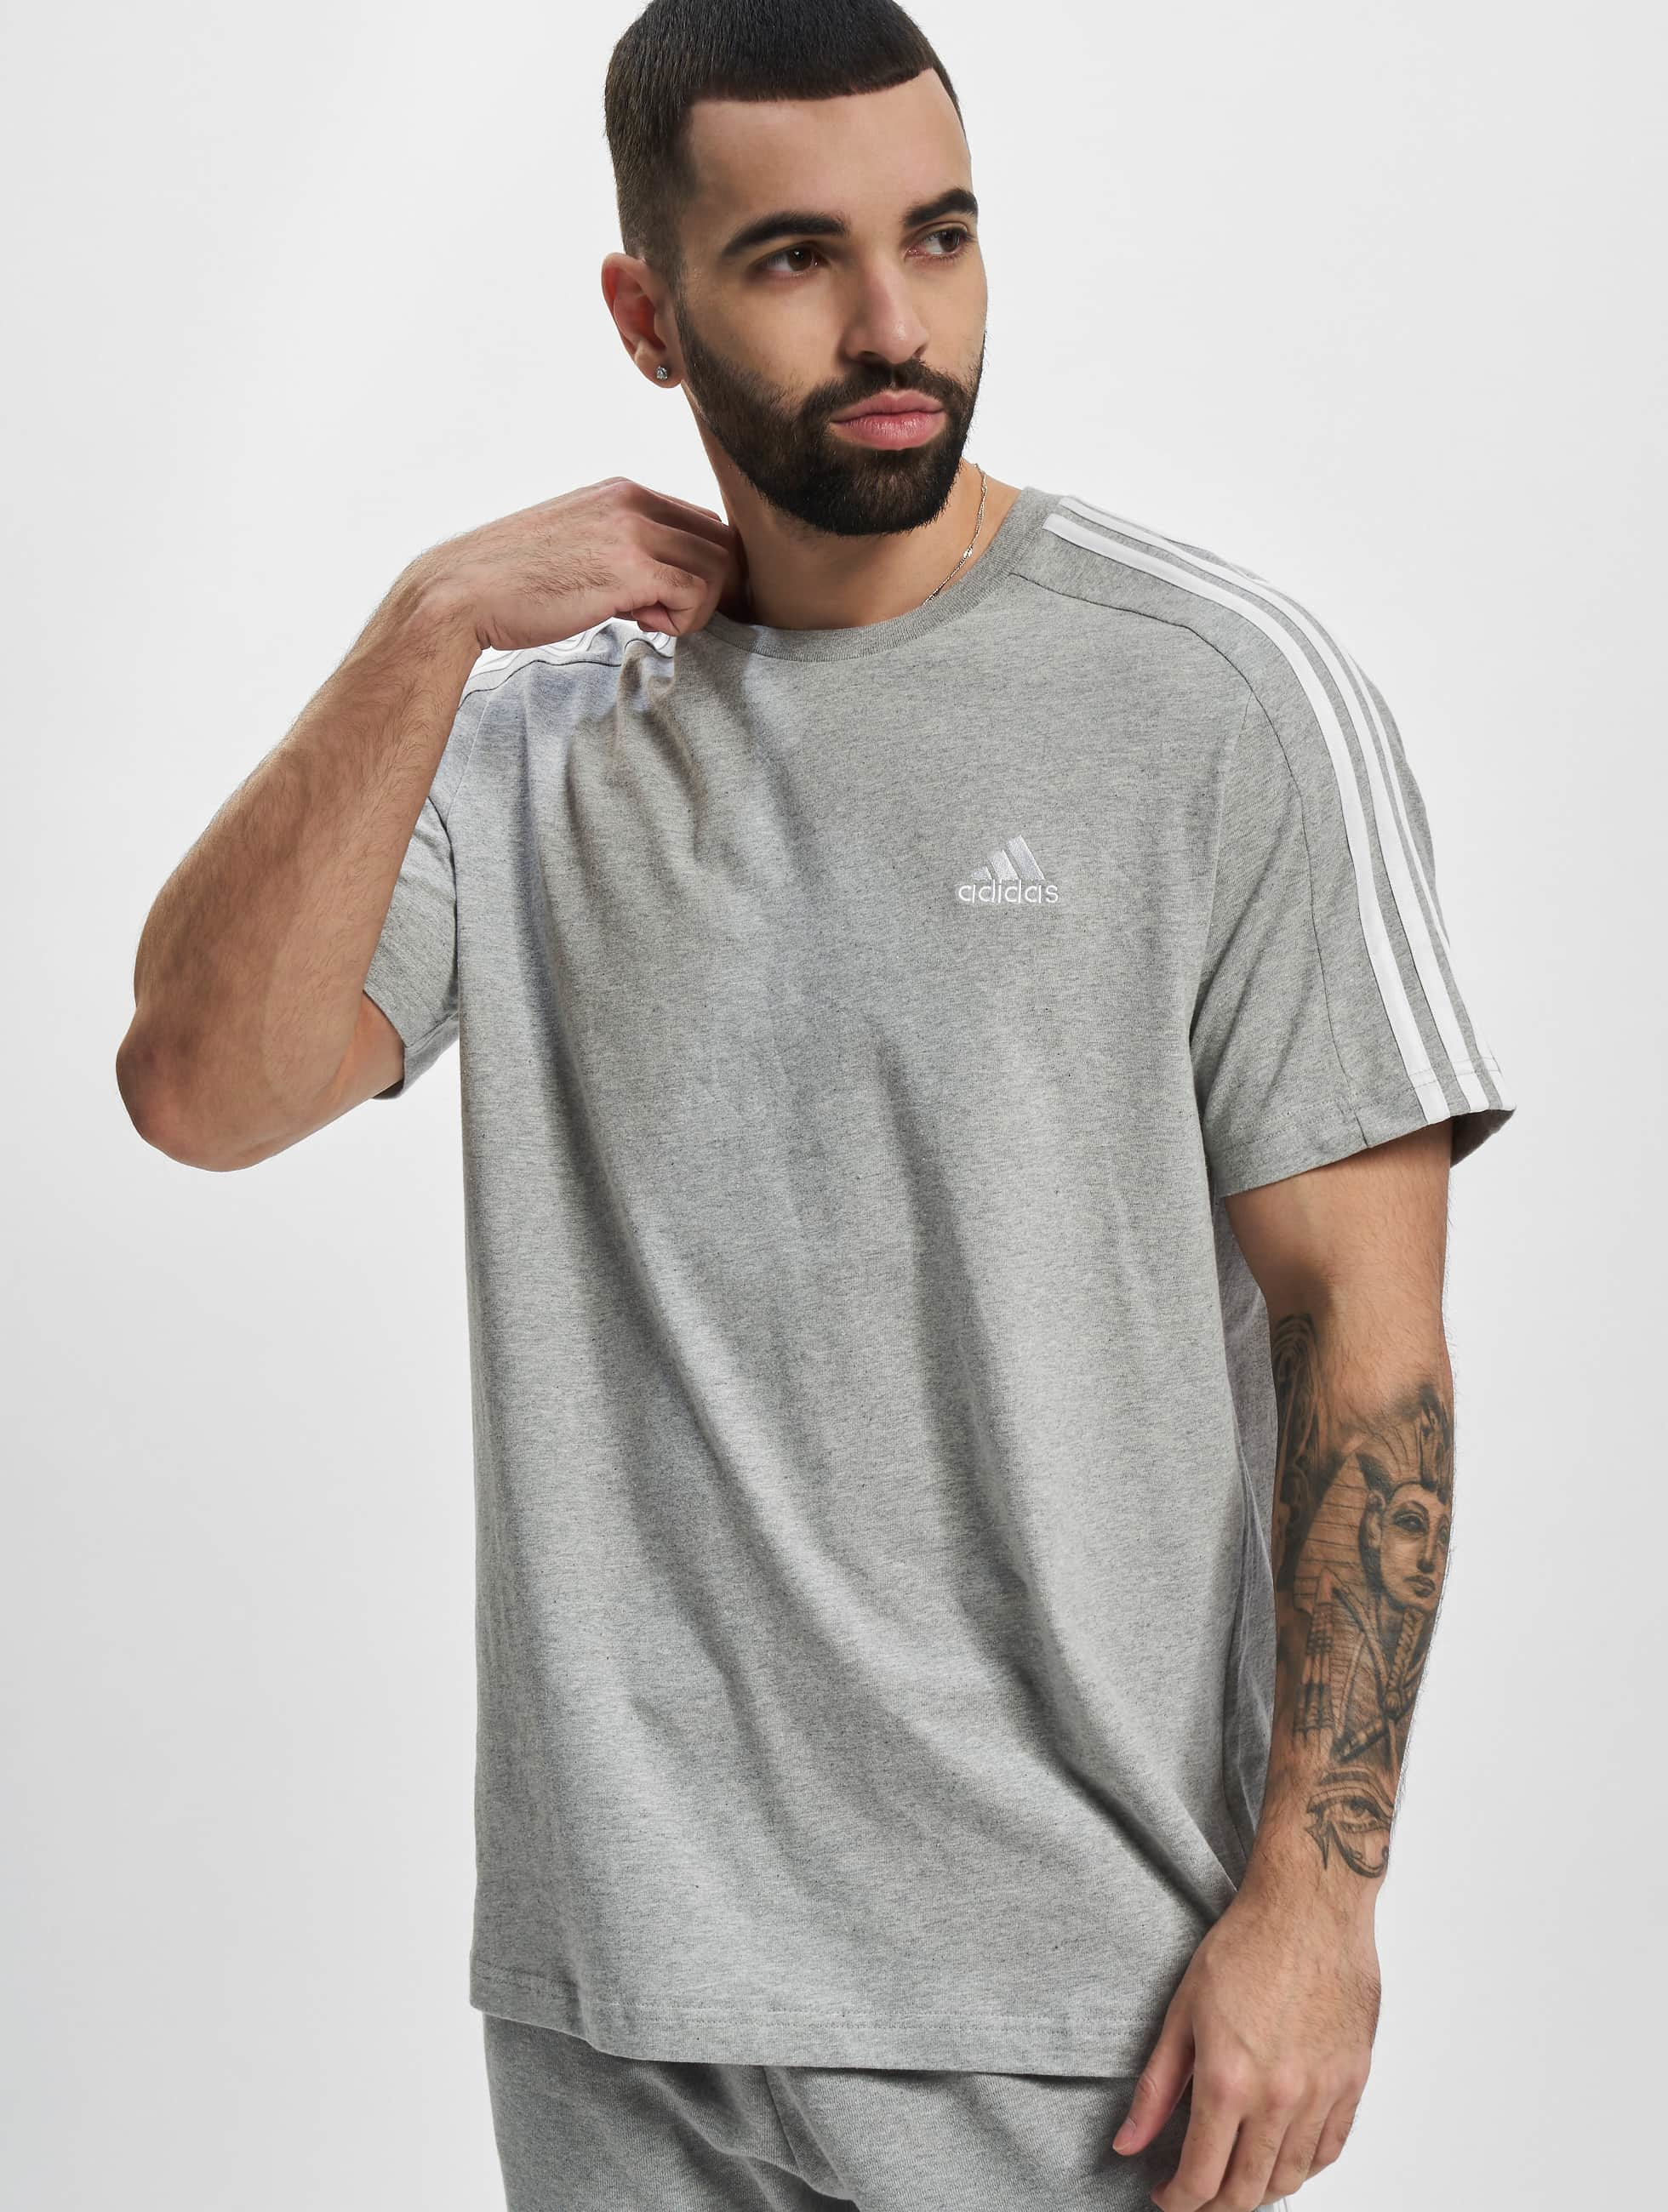 adidas Originals bovenstuk / t-shirt 3S in grijs